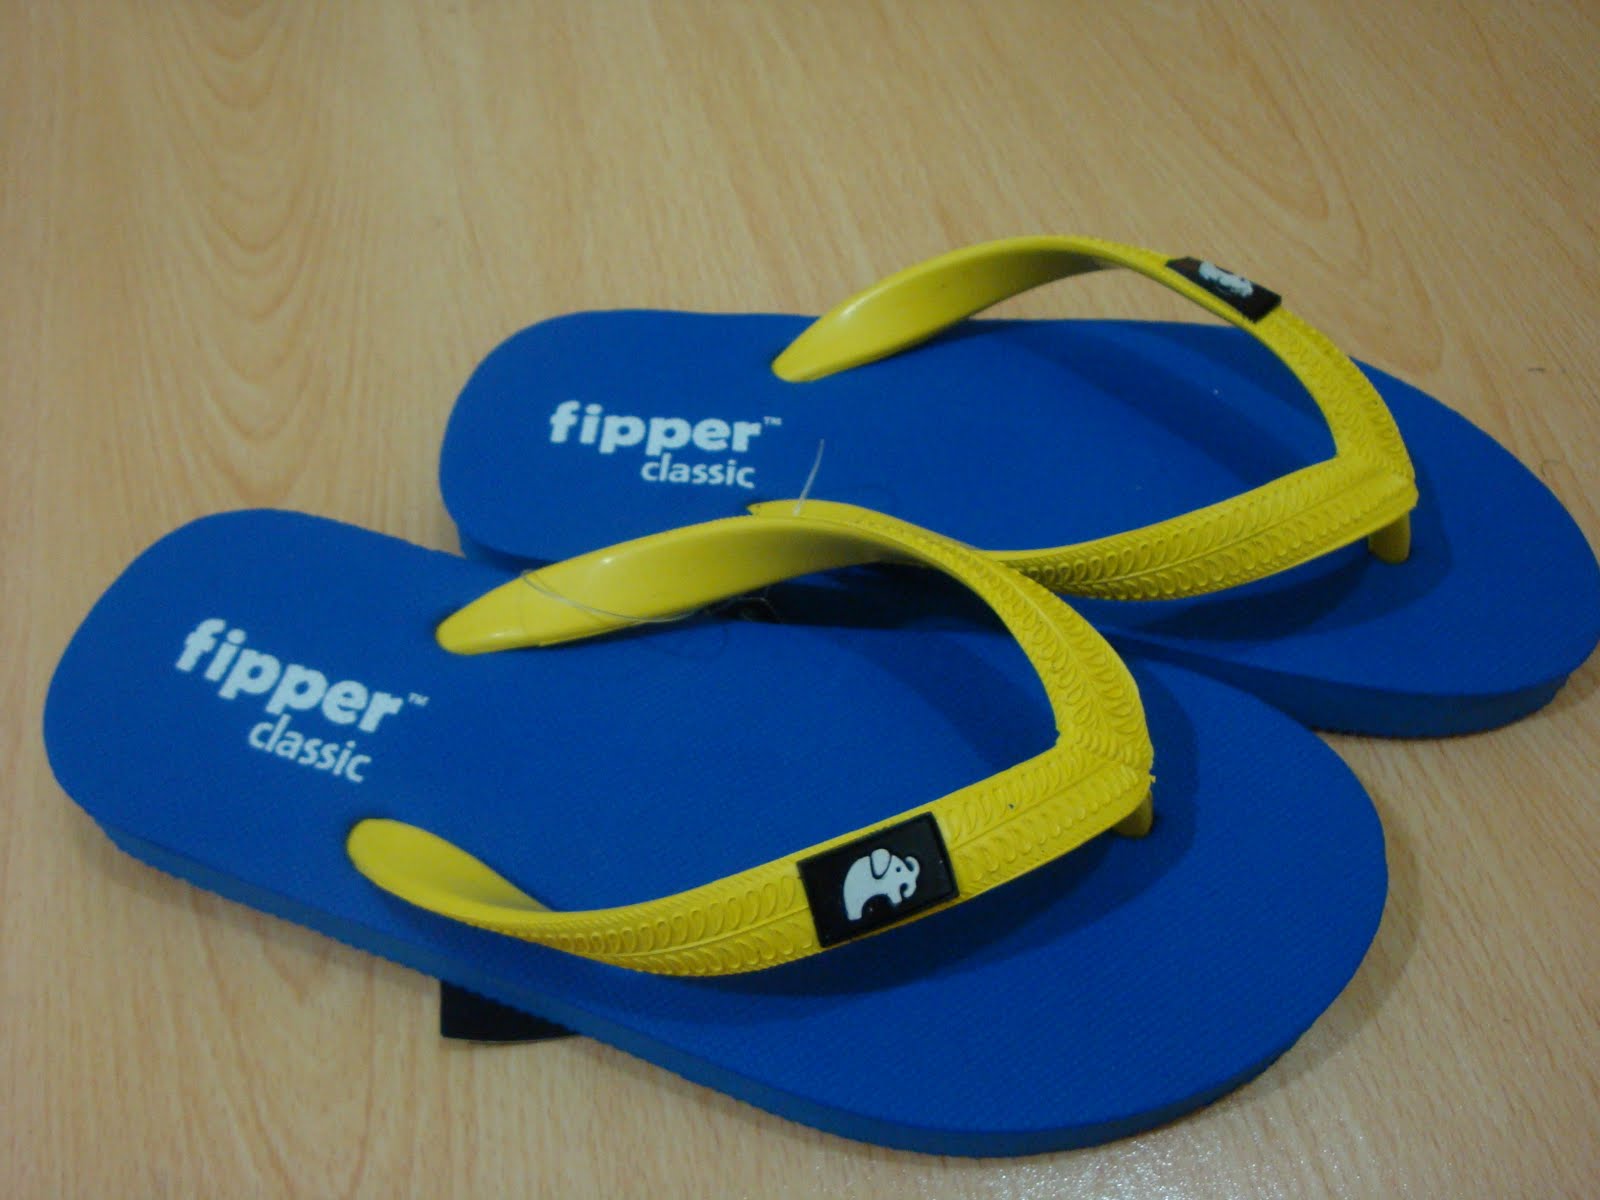  Fipper Slipper  FIPPER  CLASSIC